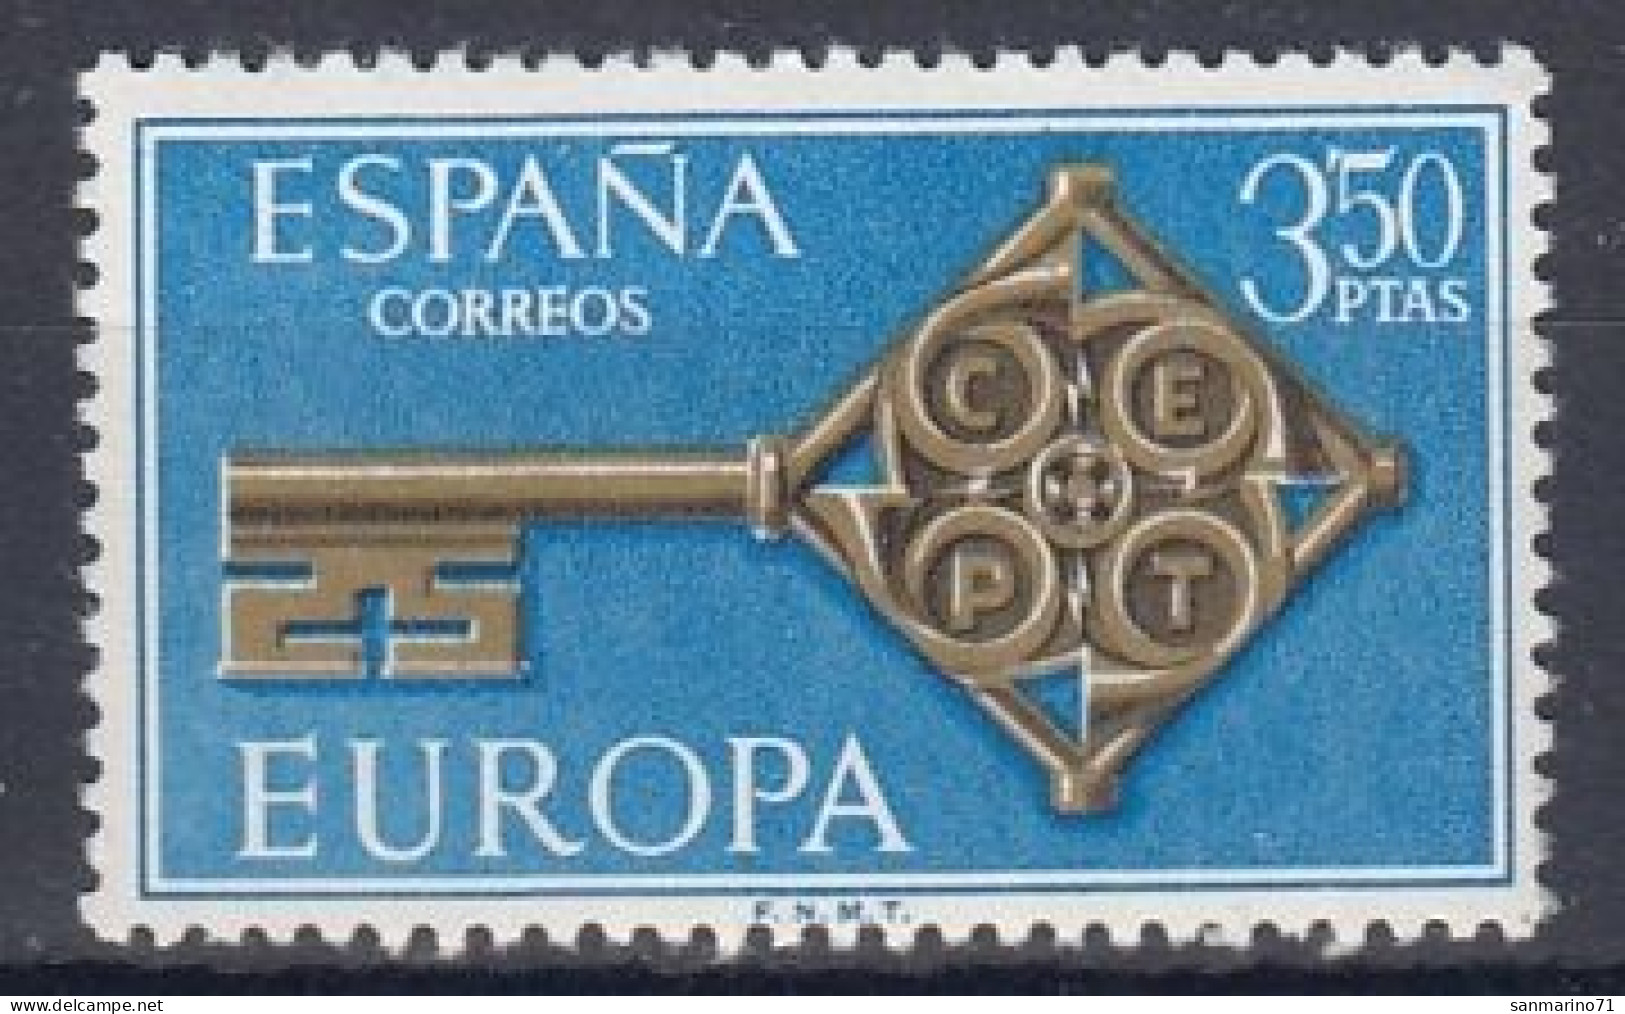 SPAIN 1755,unused - 1968